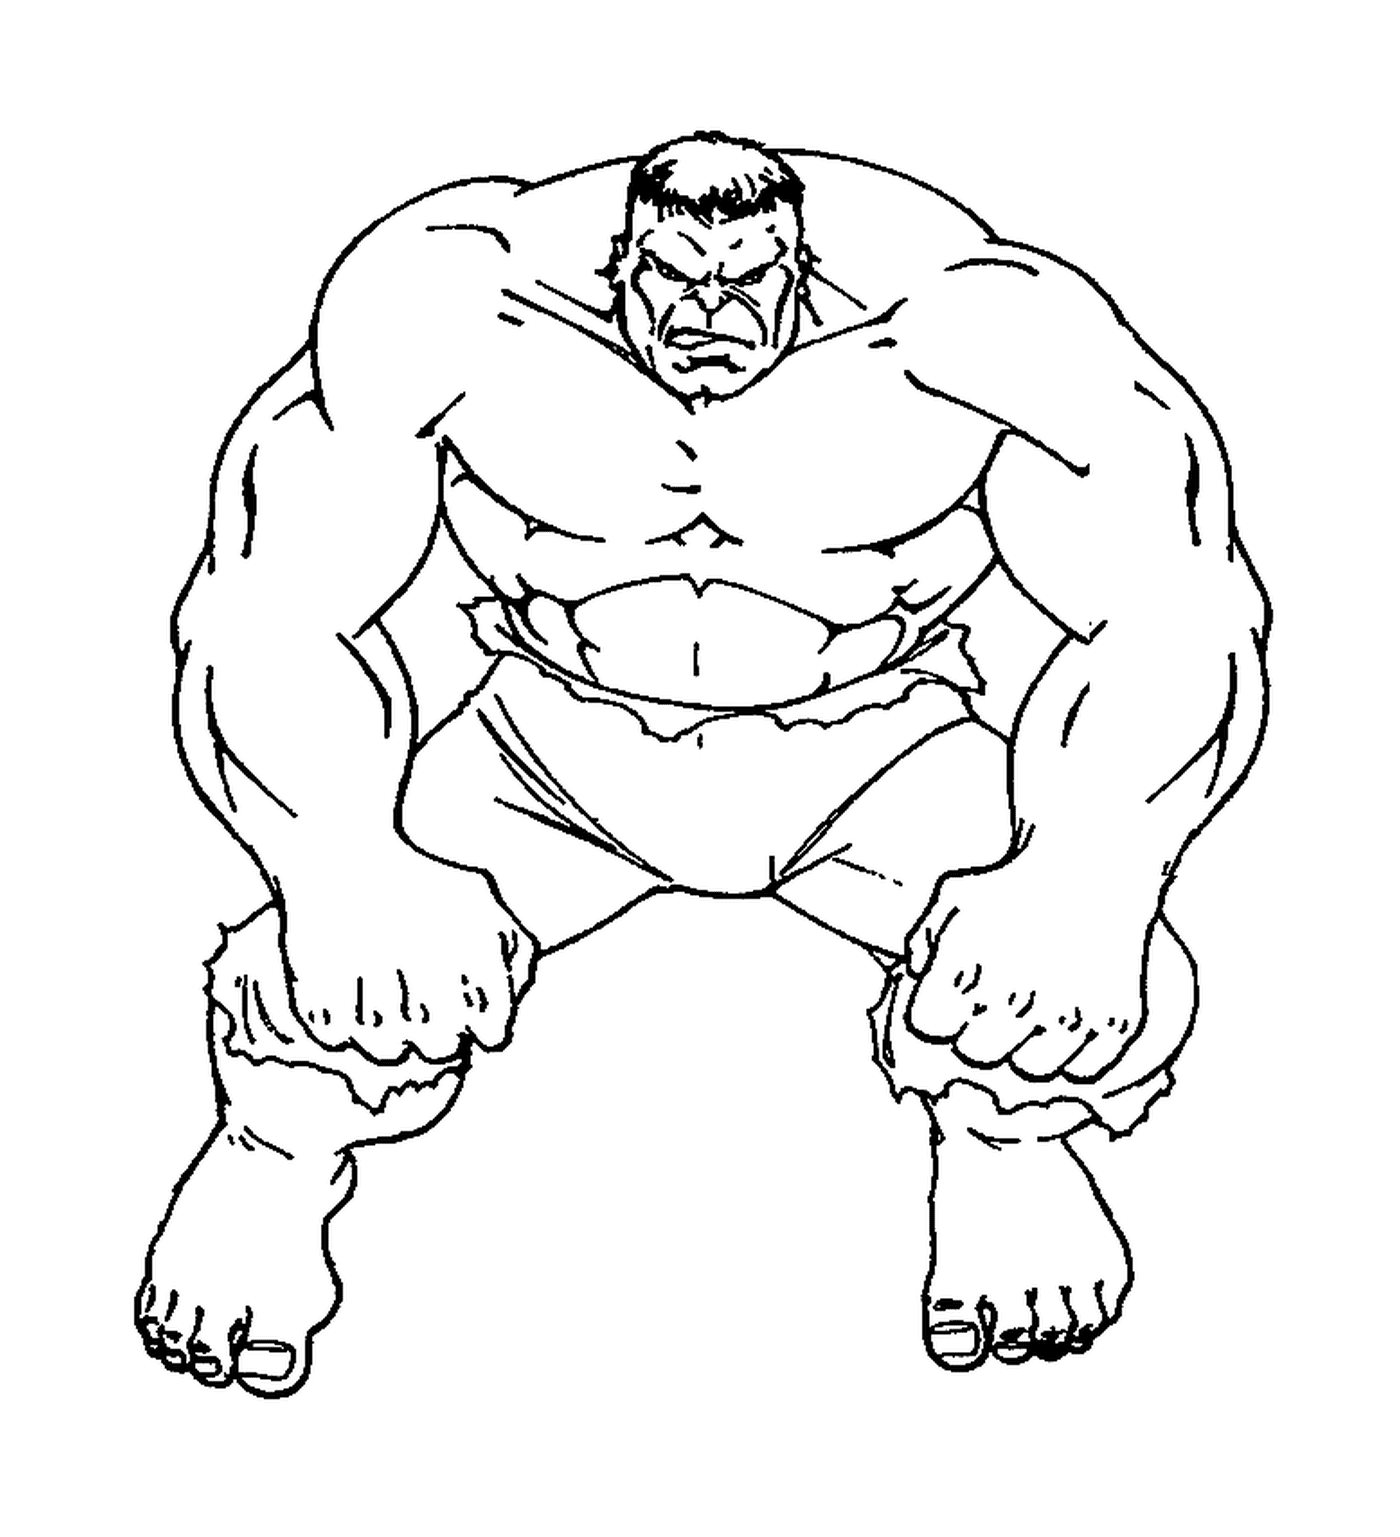  Hulk muskulös in einer Zeichnung 